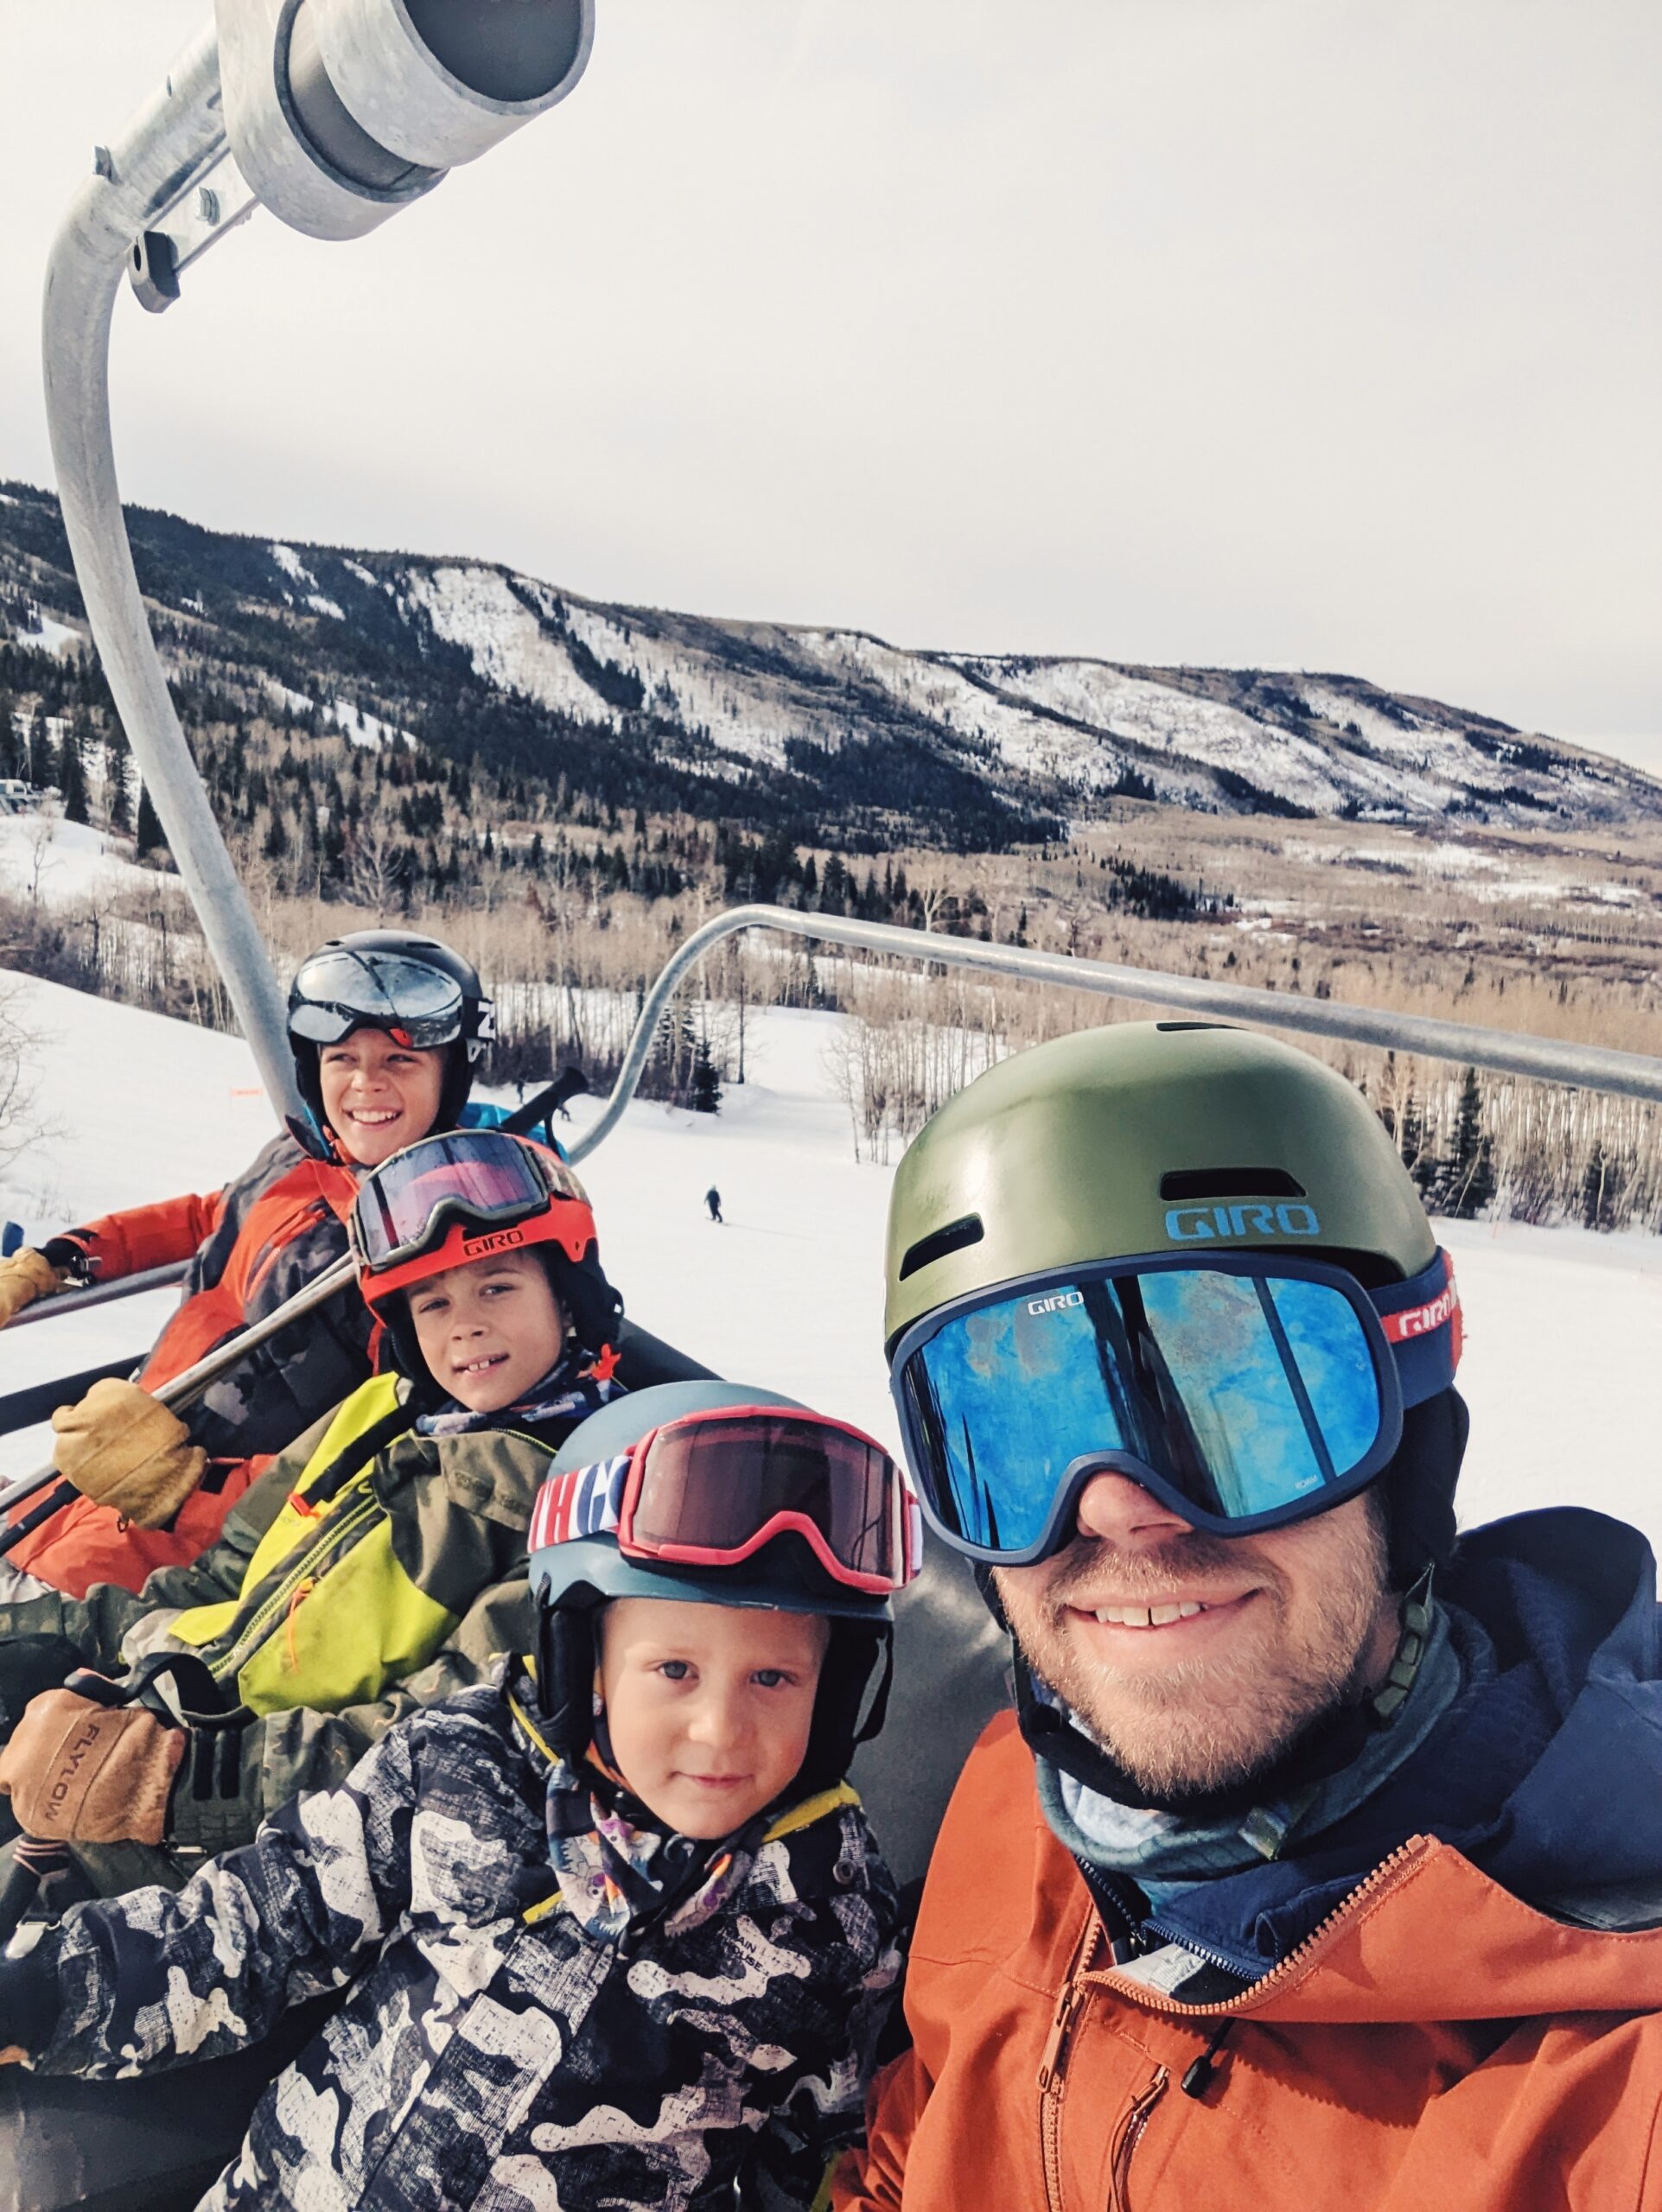 Post Christmas Skiing With The Boys